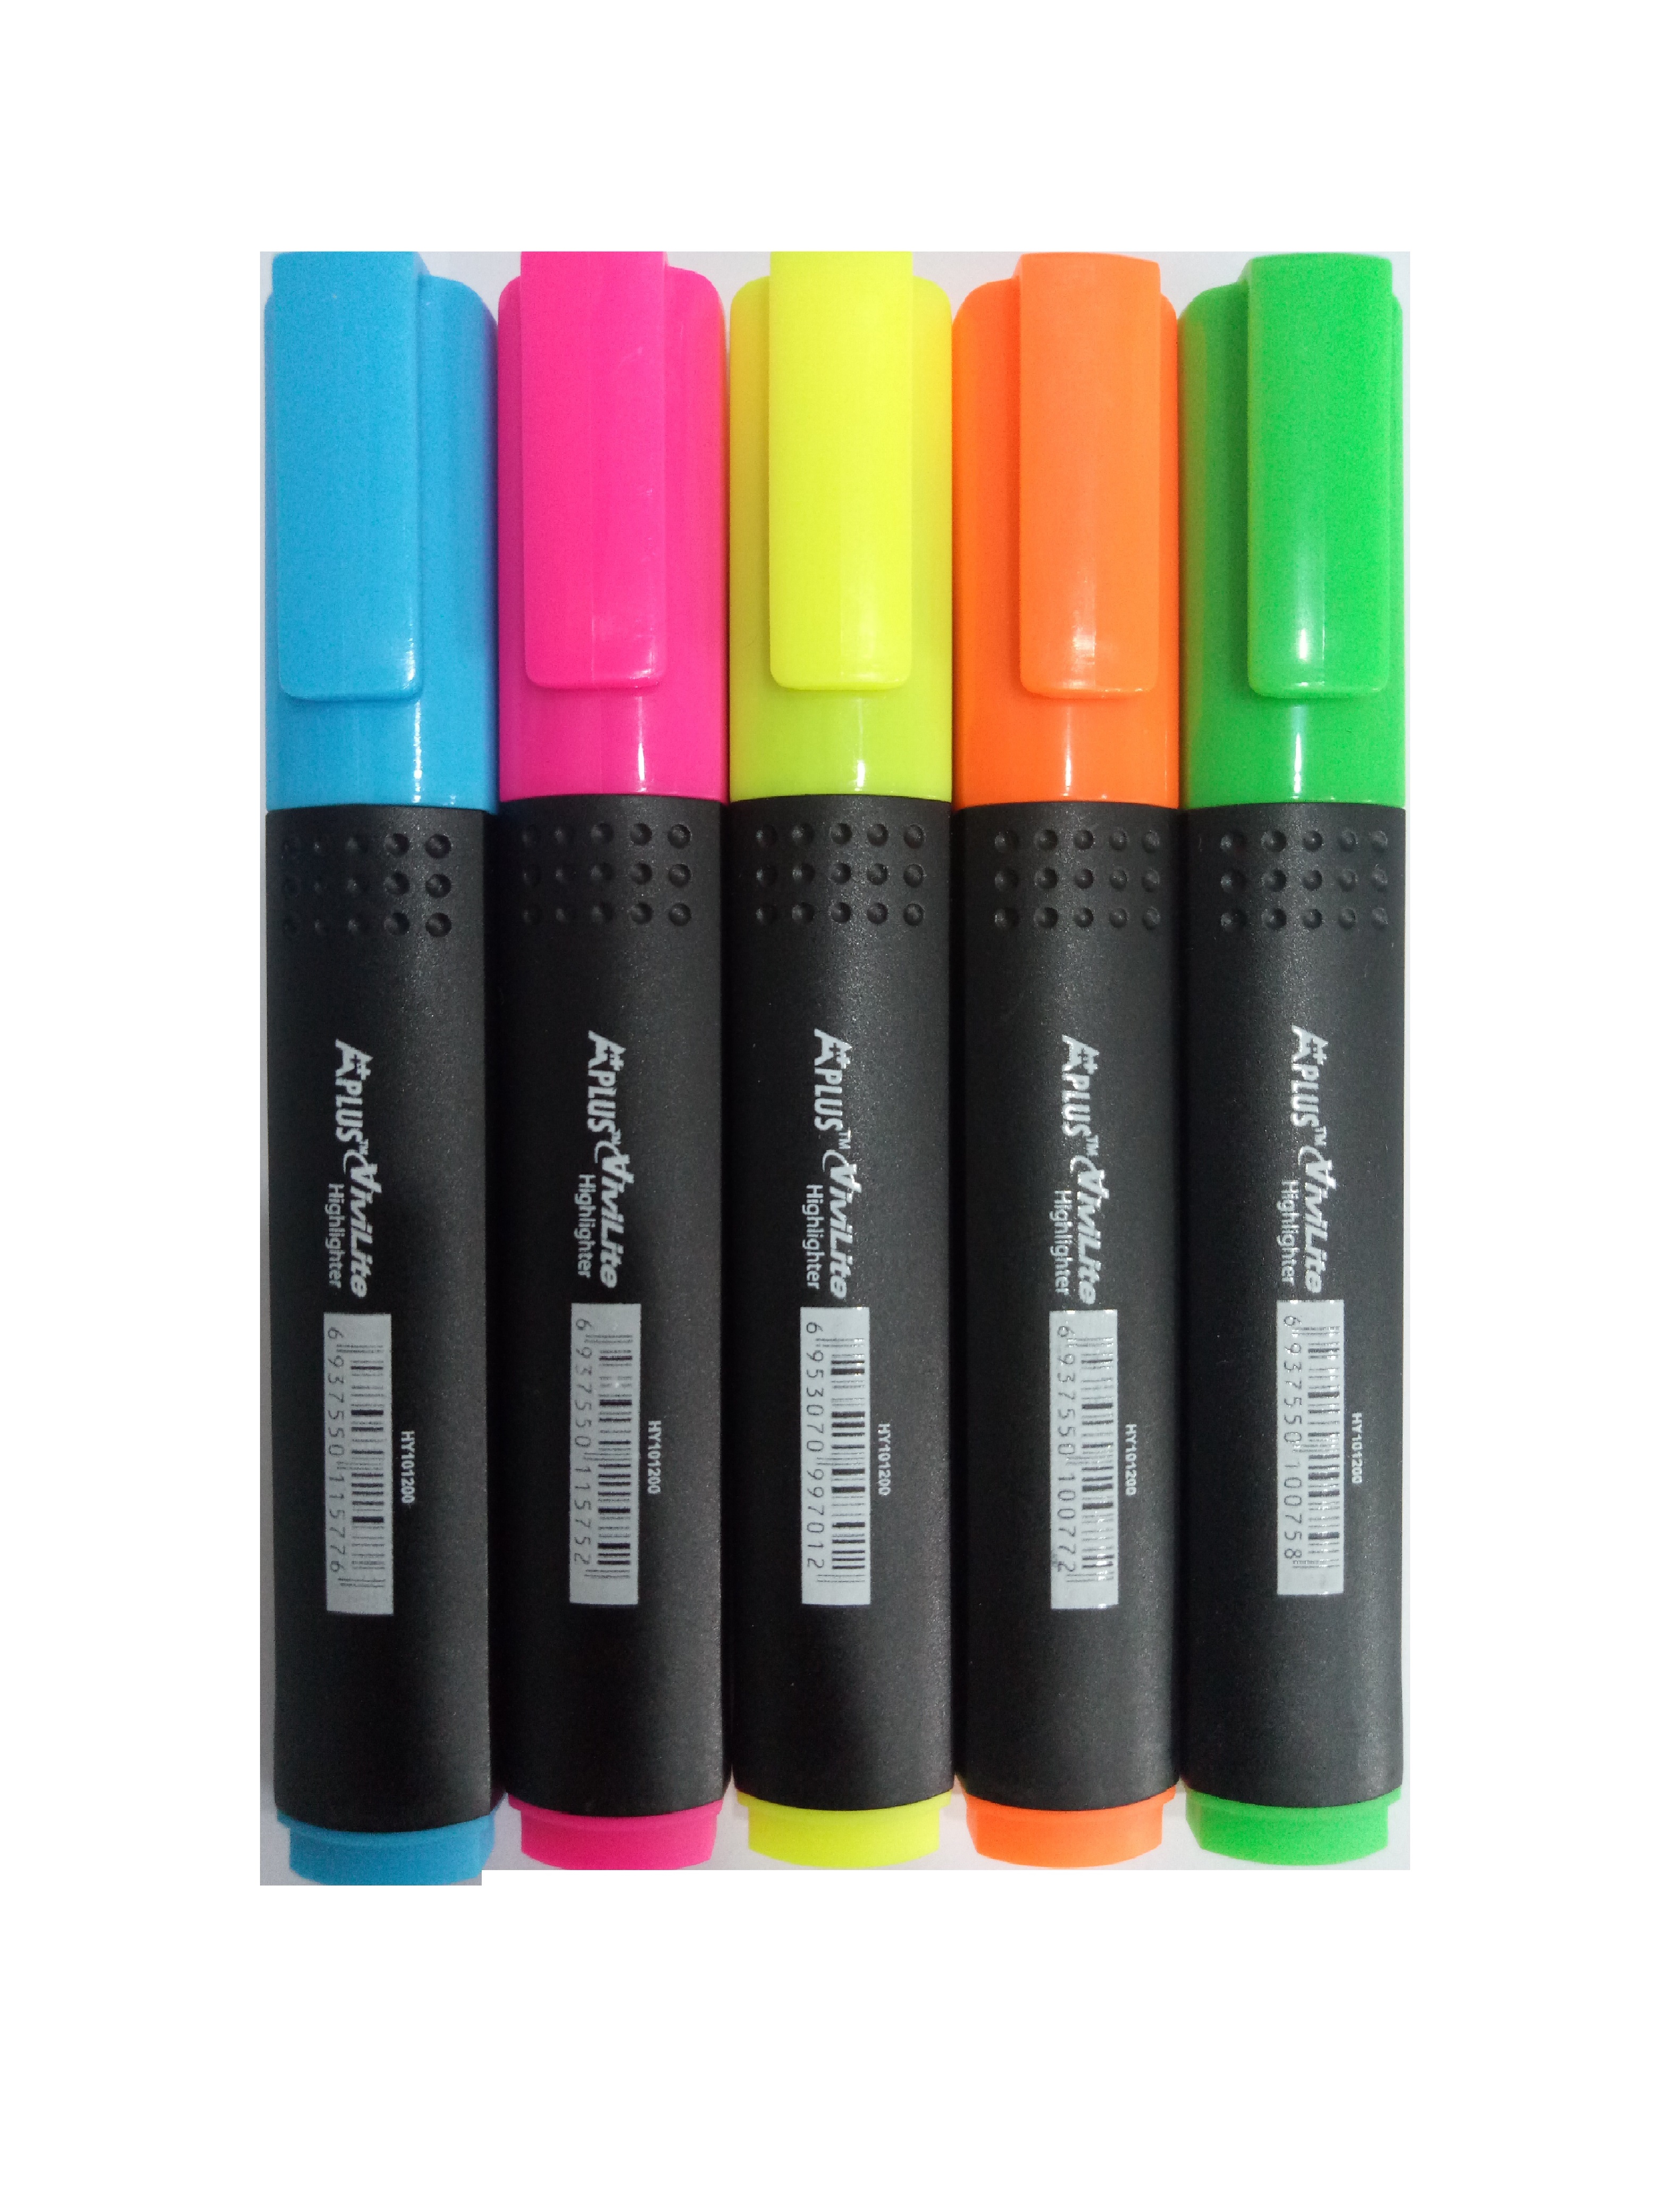 HCMCombo 5 cây bút dạ quang HY101200 đủ màu